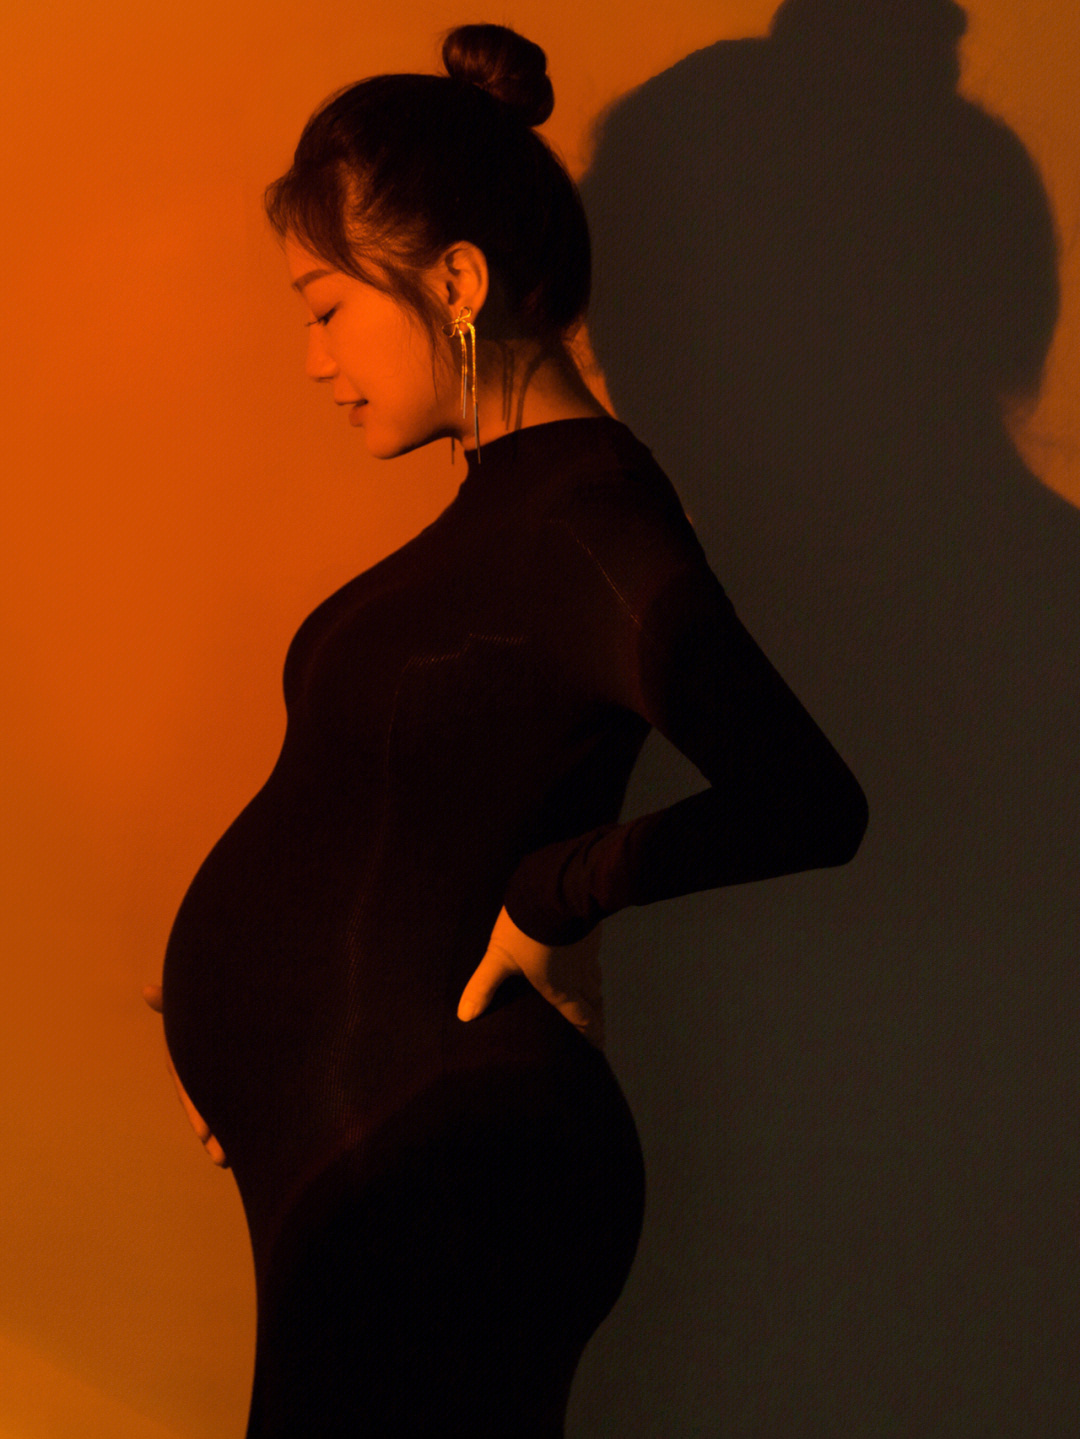 孕妇艺术照北京图片